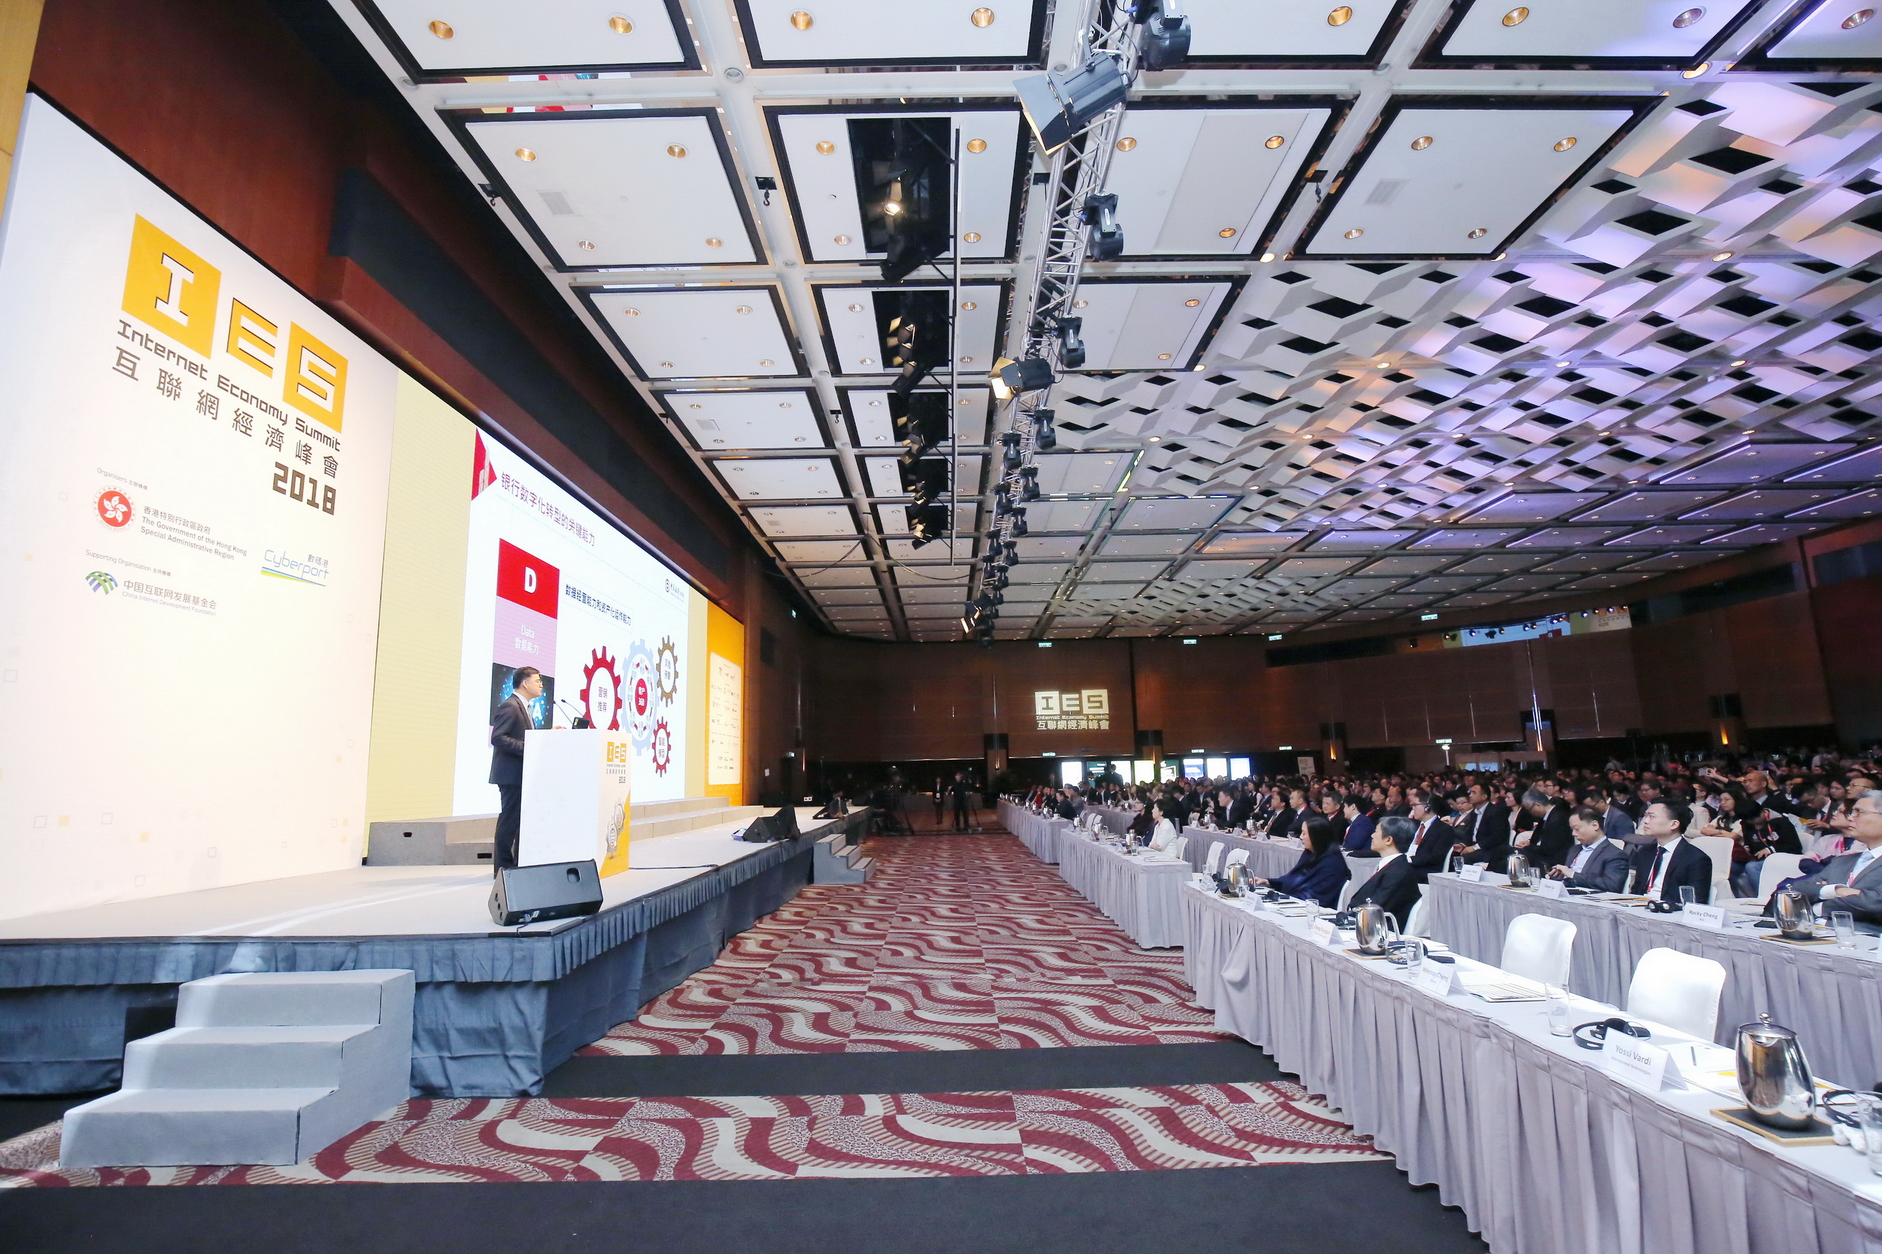 由香港特別行政區政府及數碼港主辦的「2019互聯網經濟峰會」將於4月15至16日假香港會議展覽中心舉行。